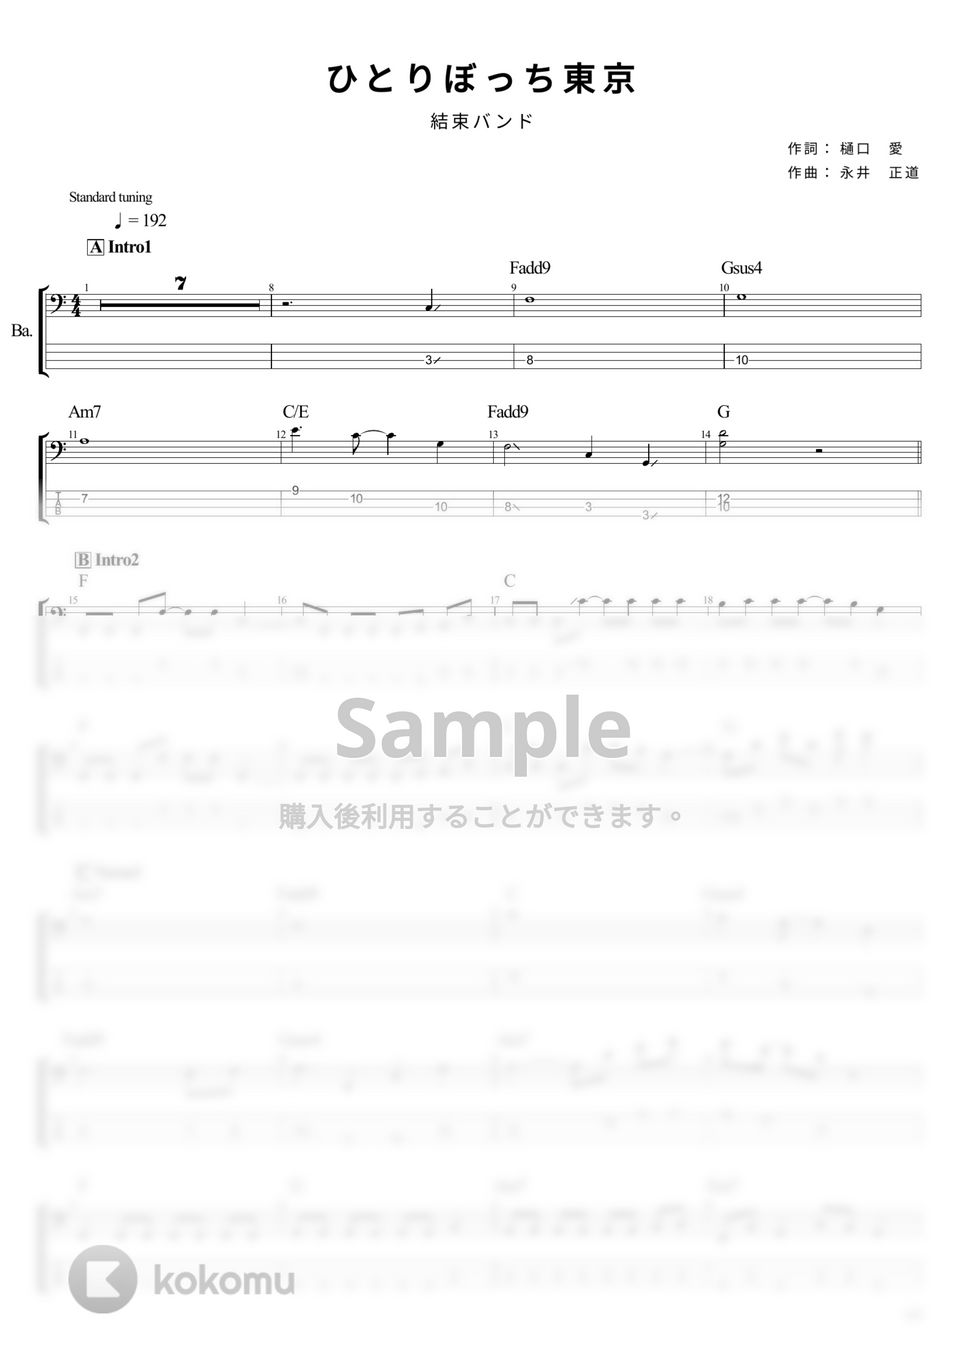 結束バンド - ひとりぼっち東京 (ベース Tab譜 4弦) by T's bass score